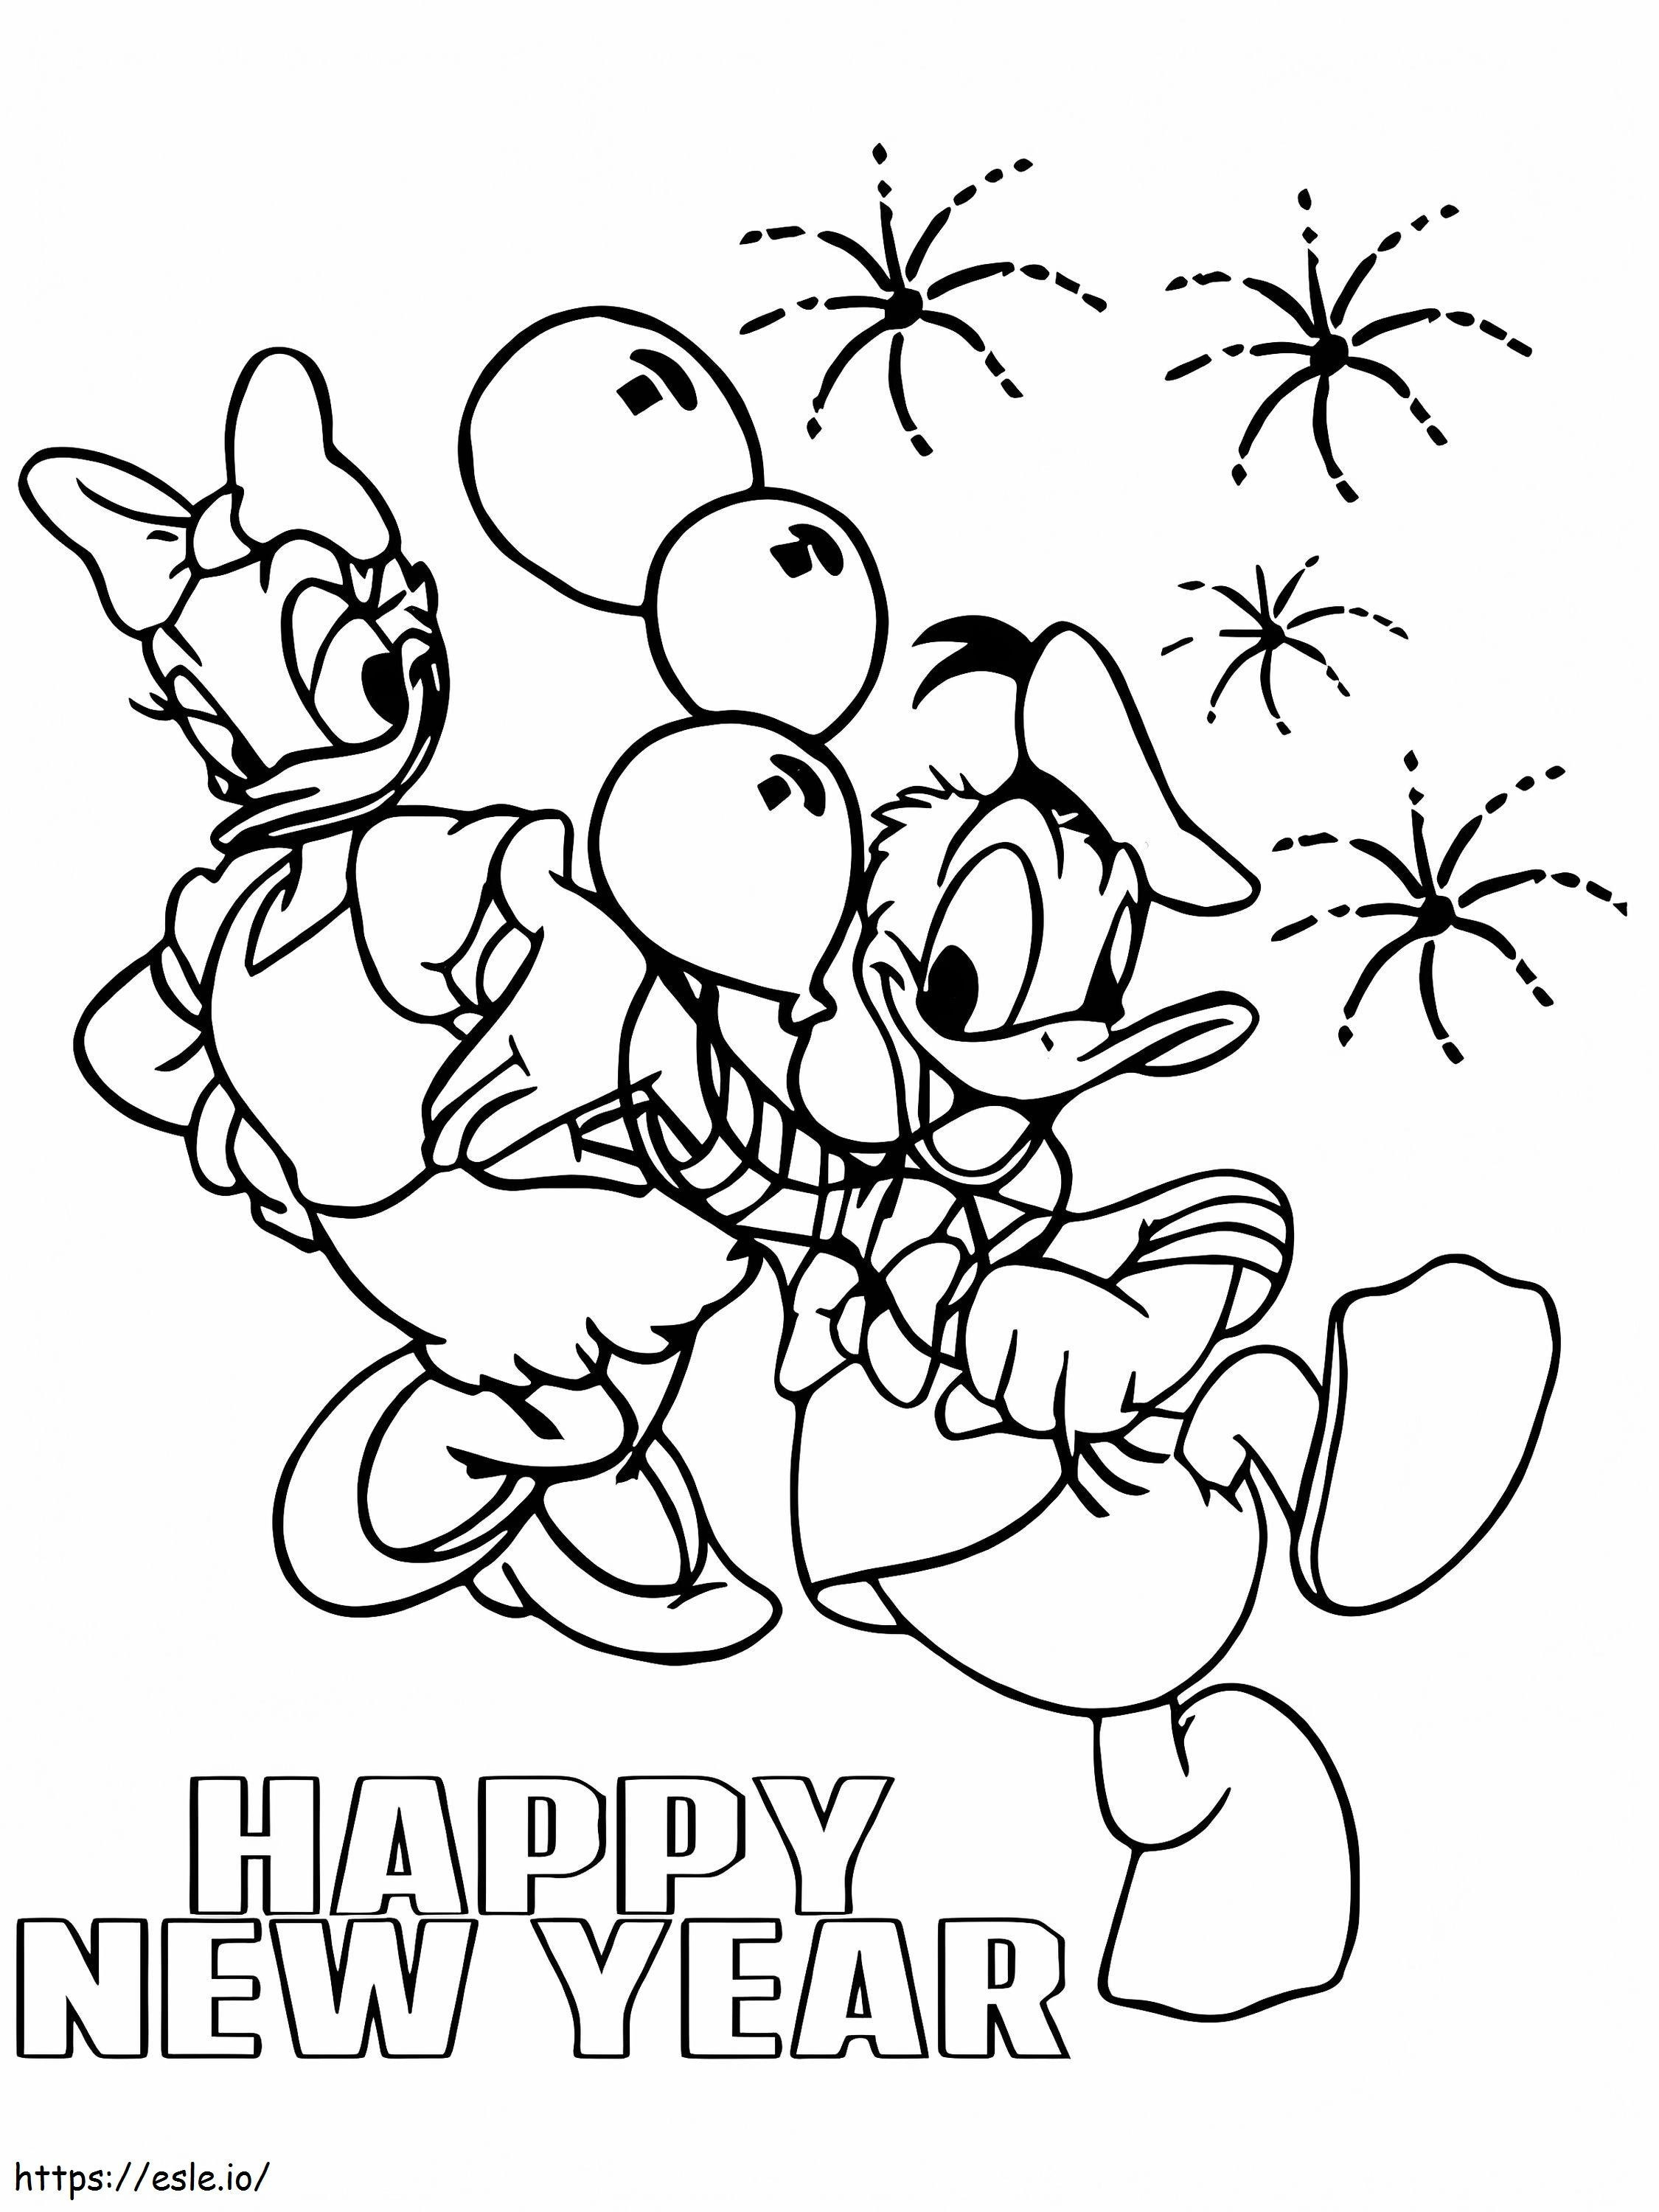 Página para colorir de Feliz Ano Novo com Margarida e Pato Donald para colorir